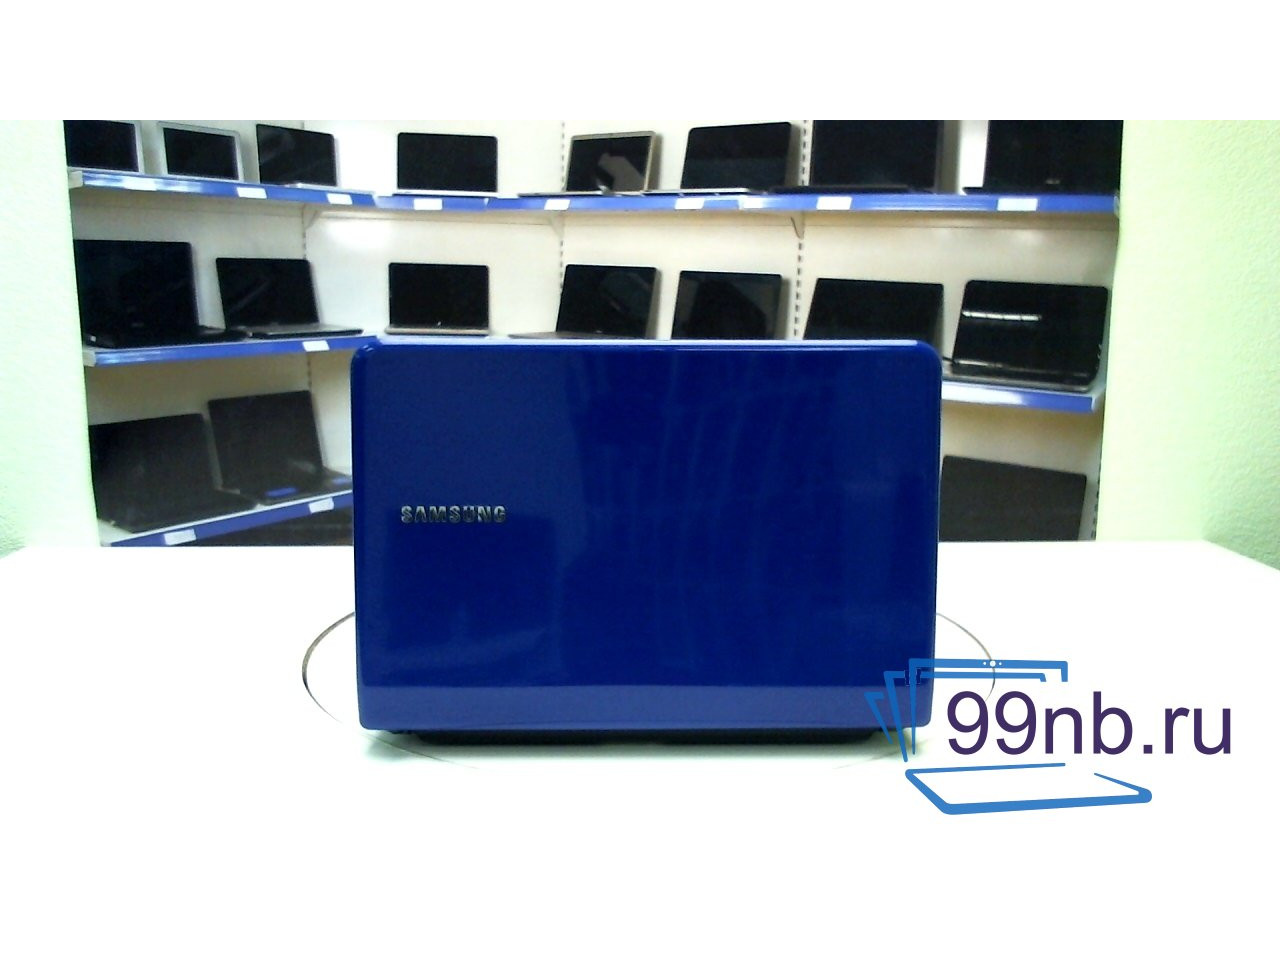 Samsung np-nc110-a04ru